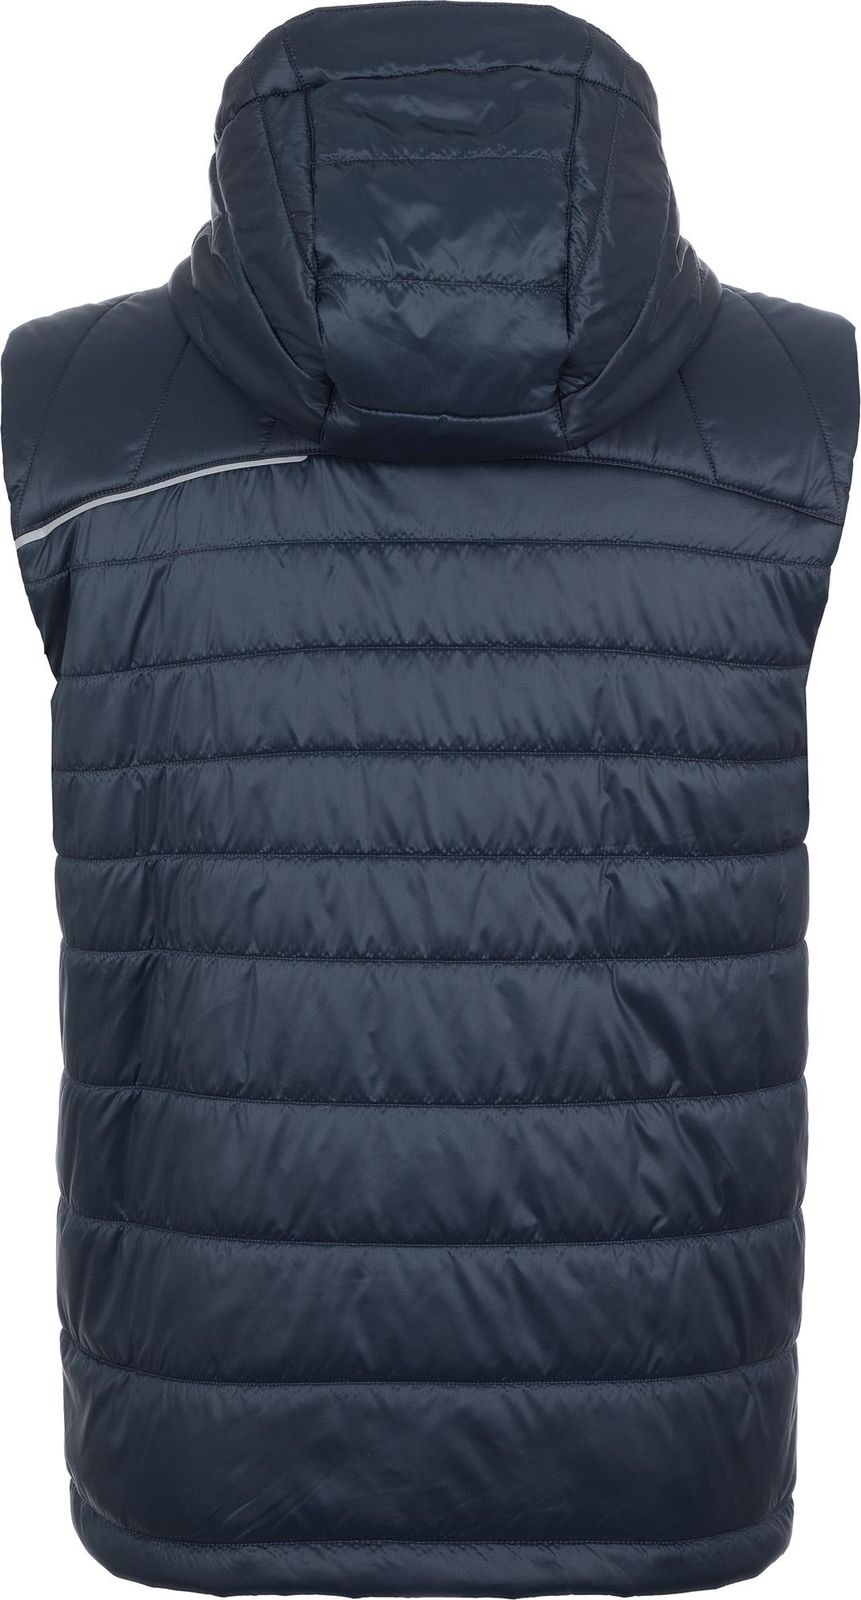   Merrell Men's Sleeveless Jacket Vest, : -. S19AMRVEM01-Z4.  52